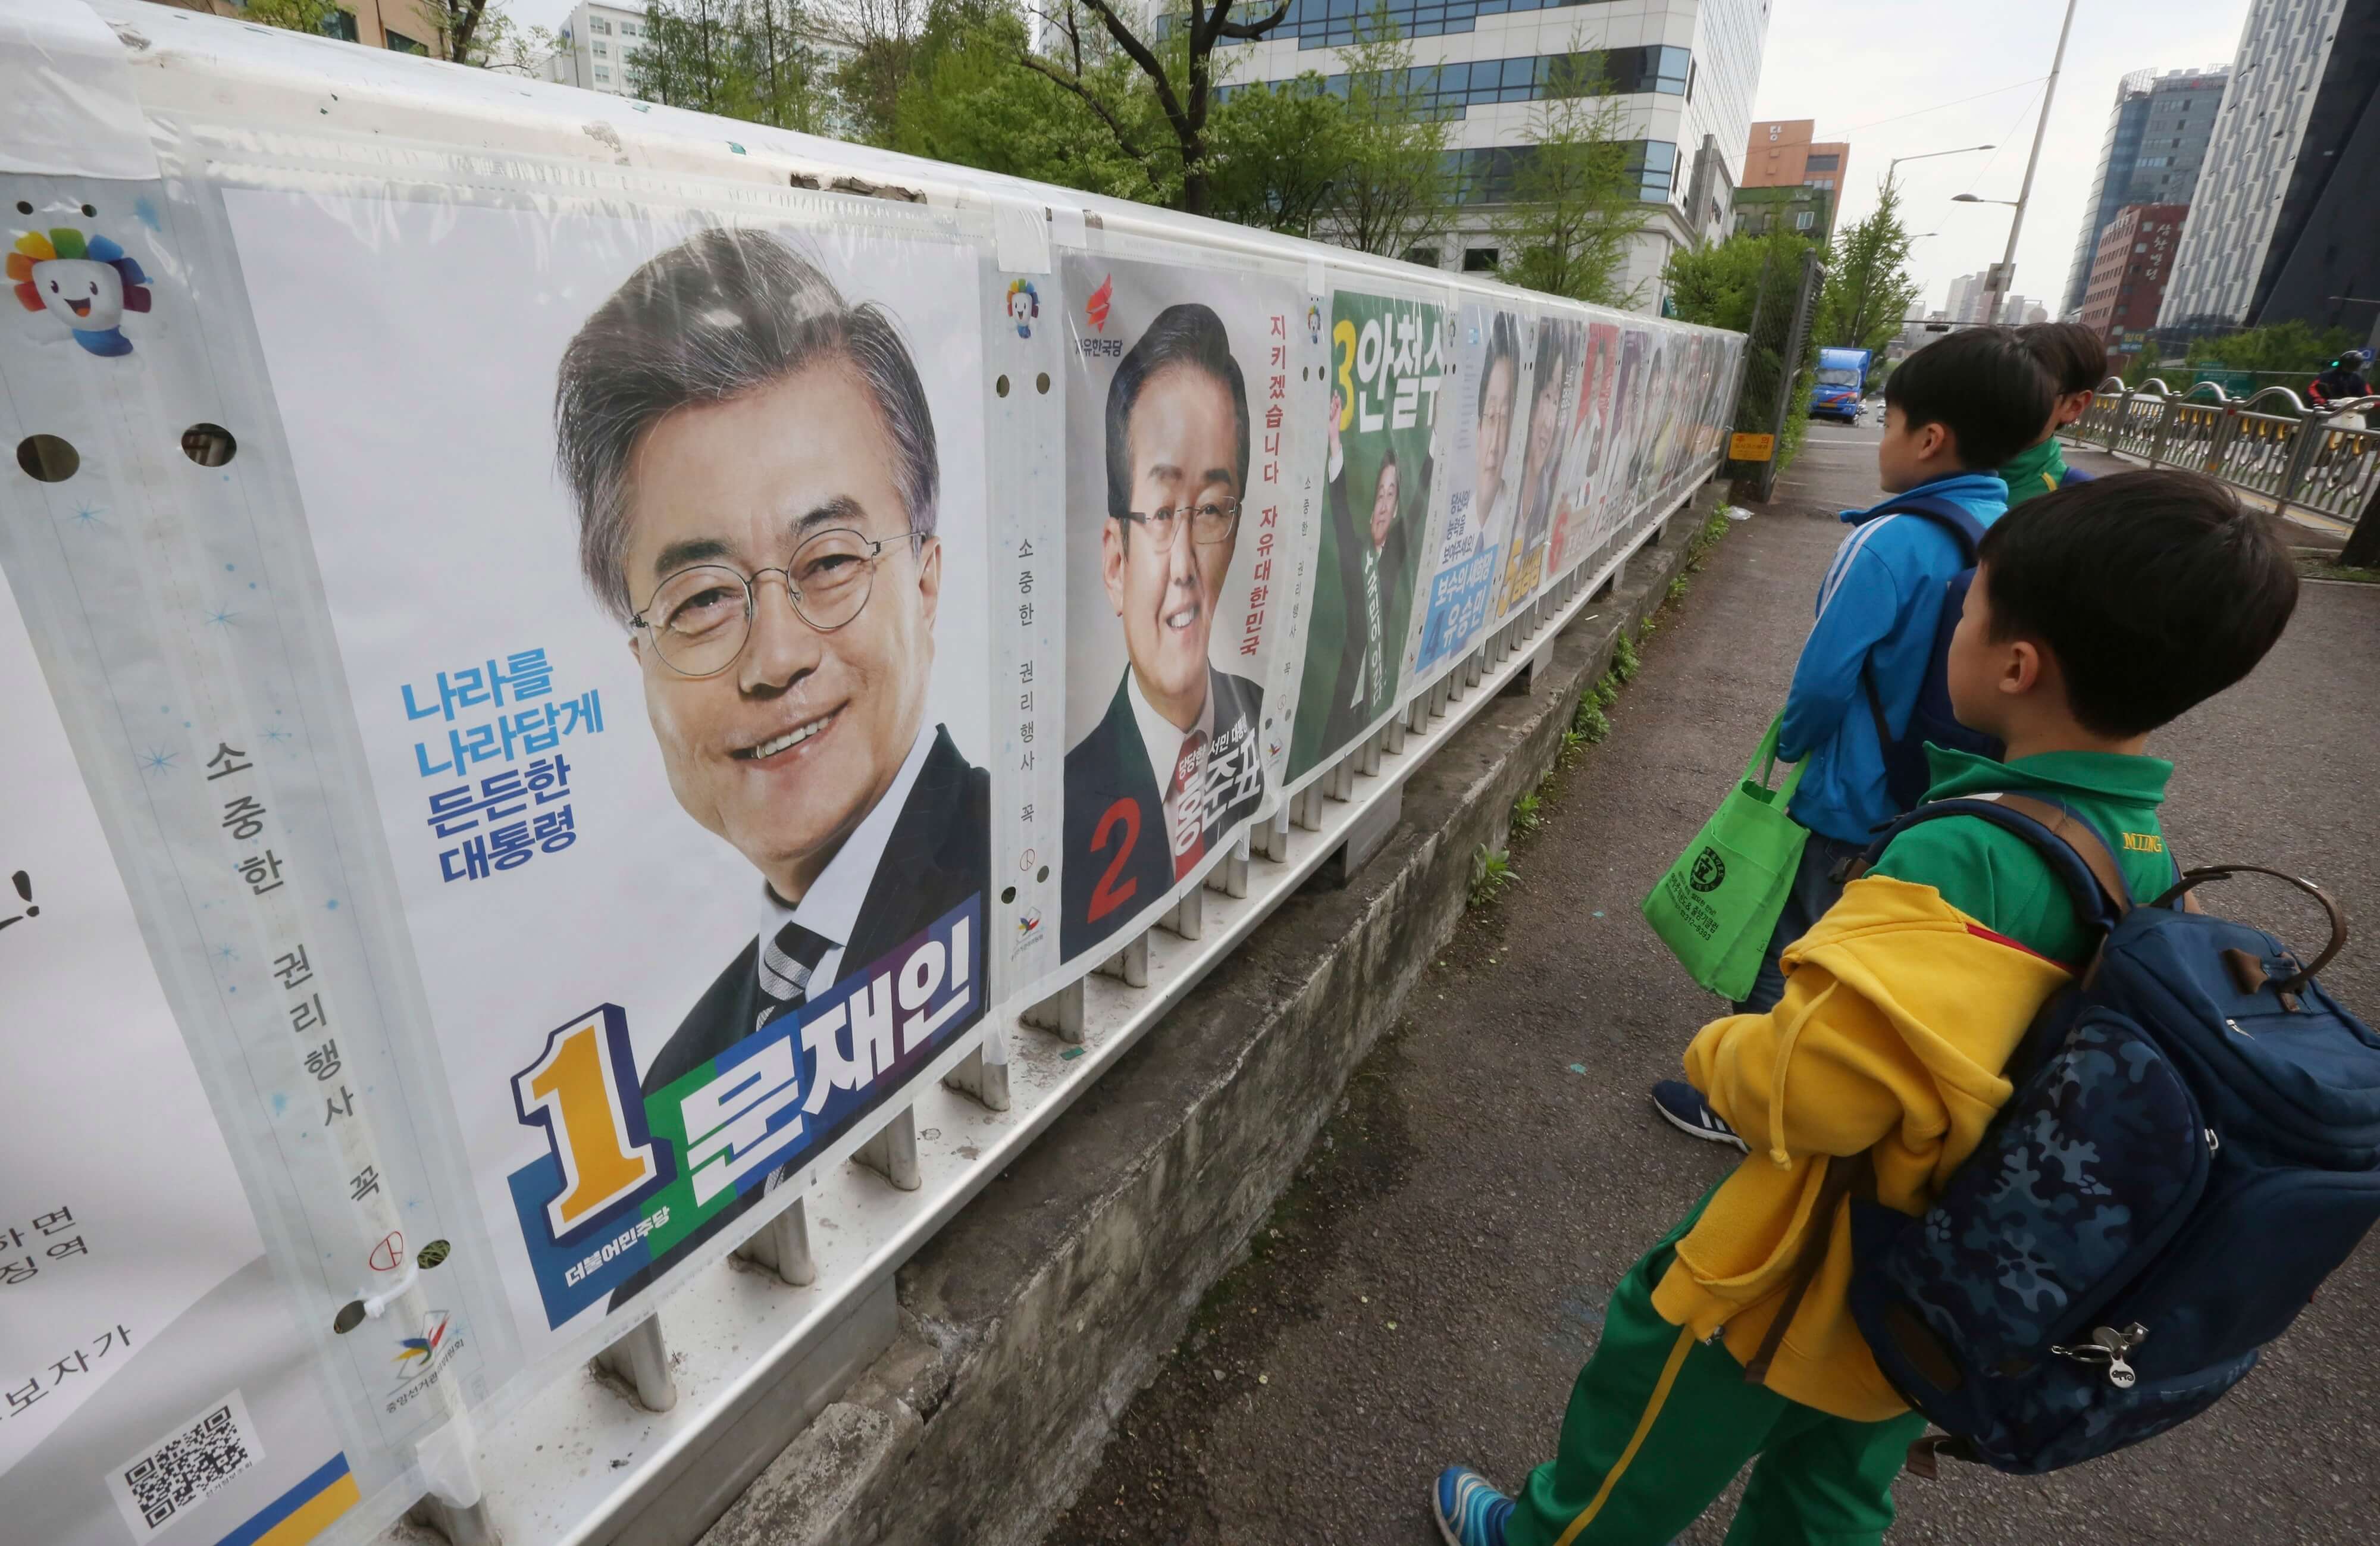 Los estudiantes de la escuela primaria miran los carteles que muestran a candidatos para la elección presidencial en Seúl, Corea del Sur. (AP)